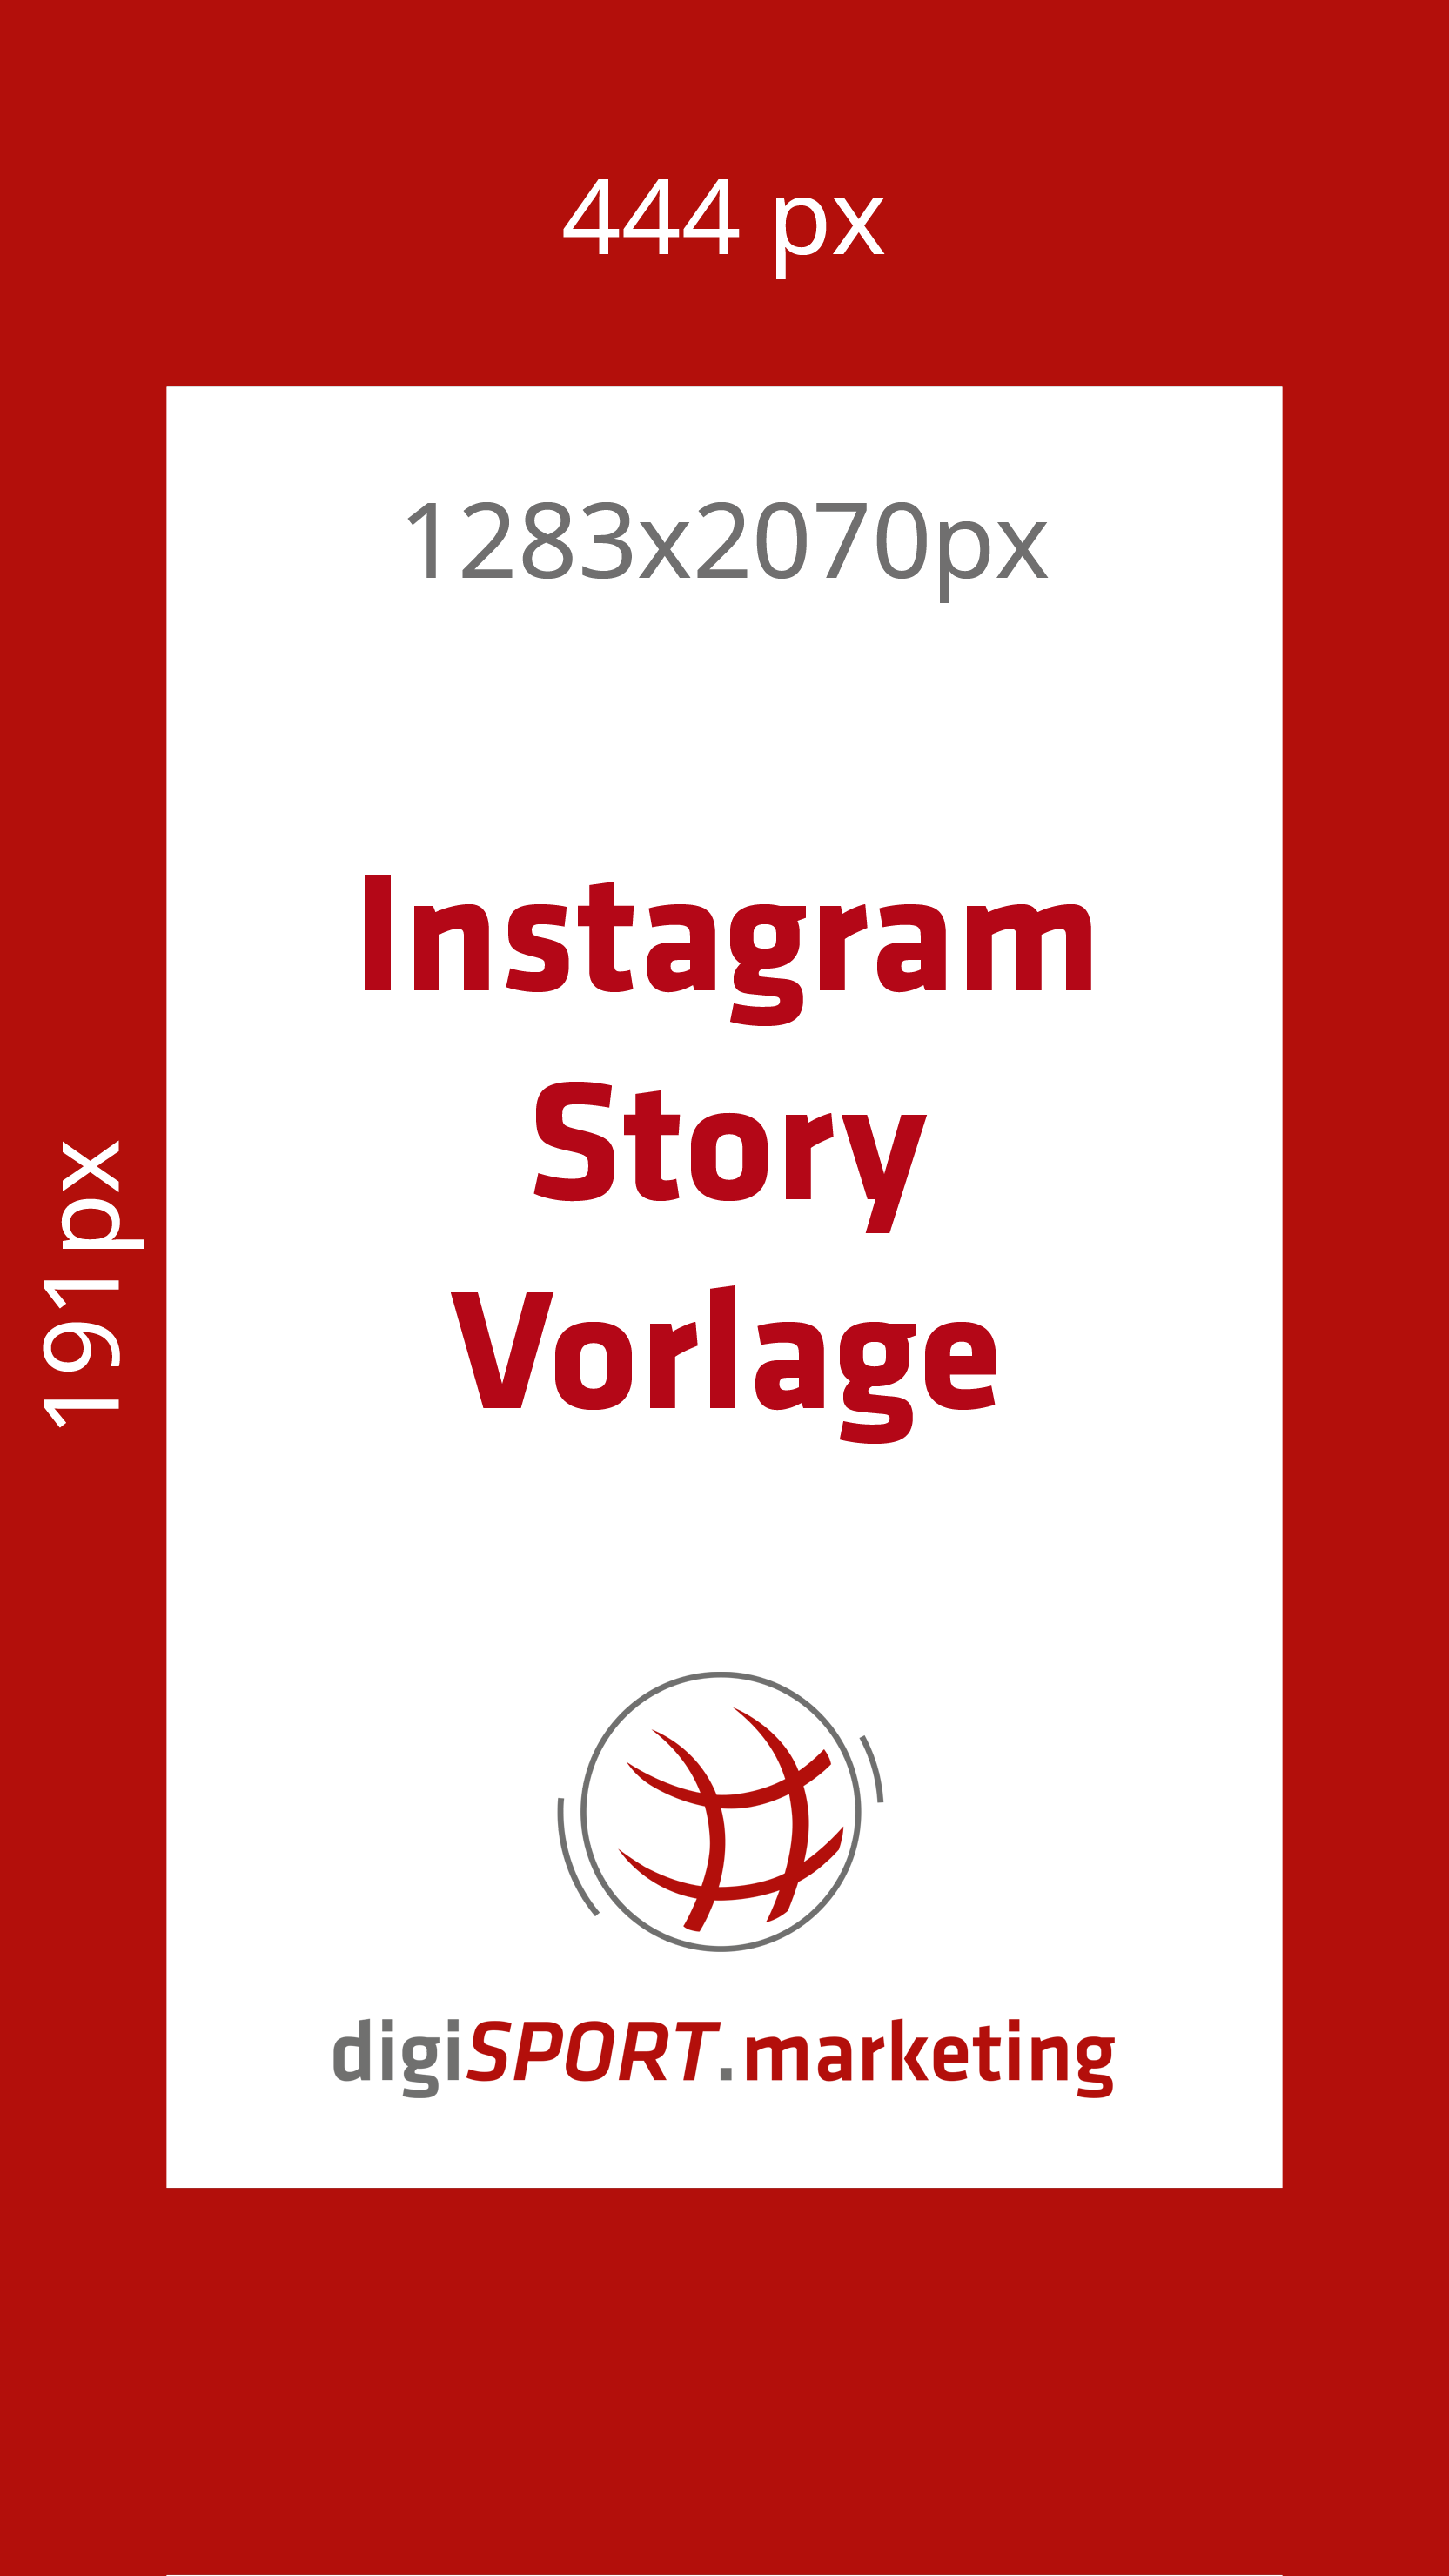 Vorlage für Instagram Story